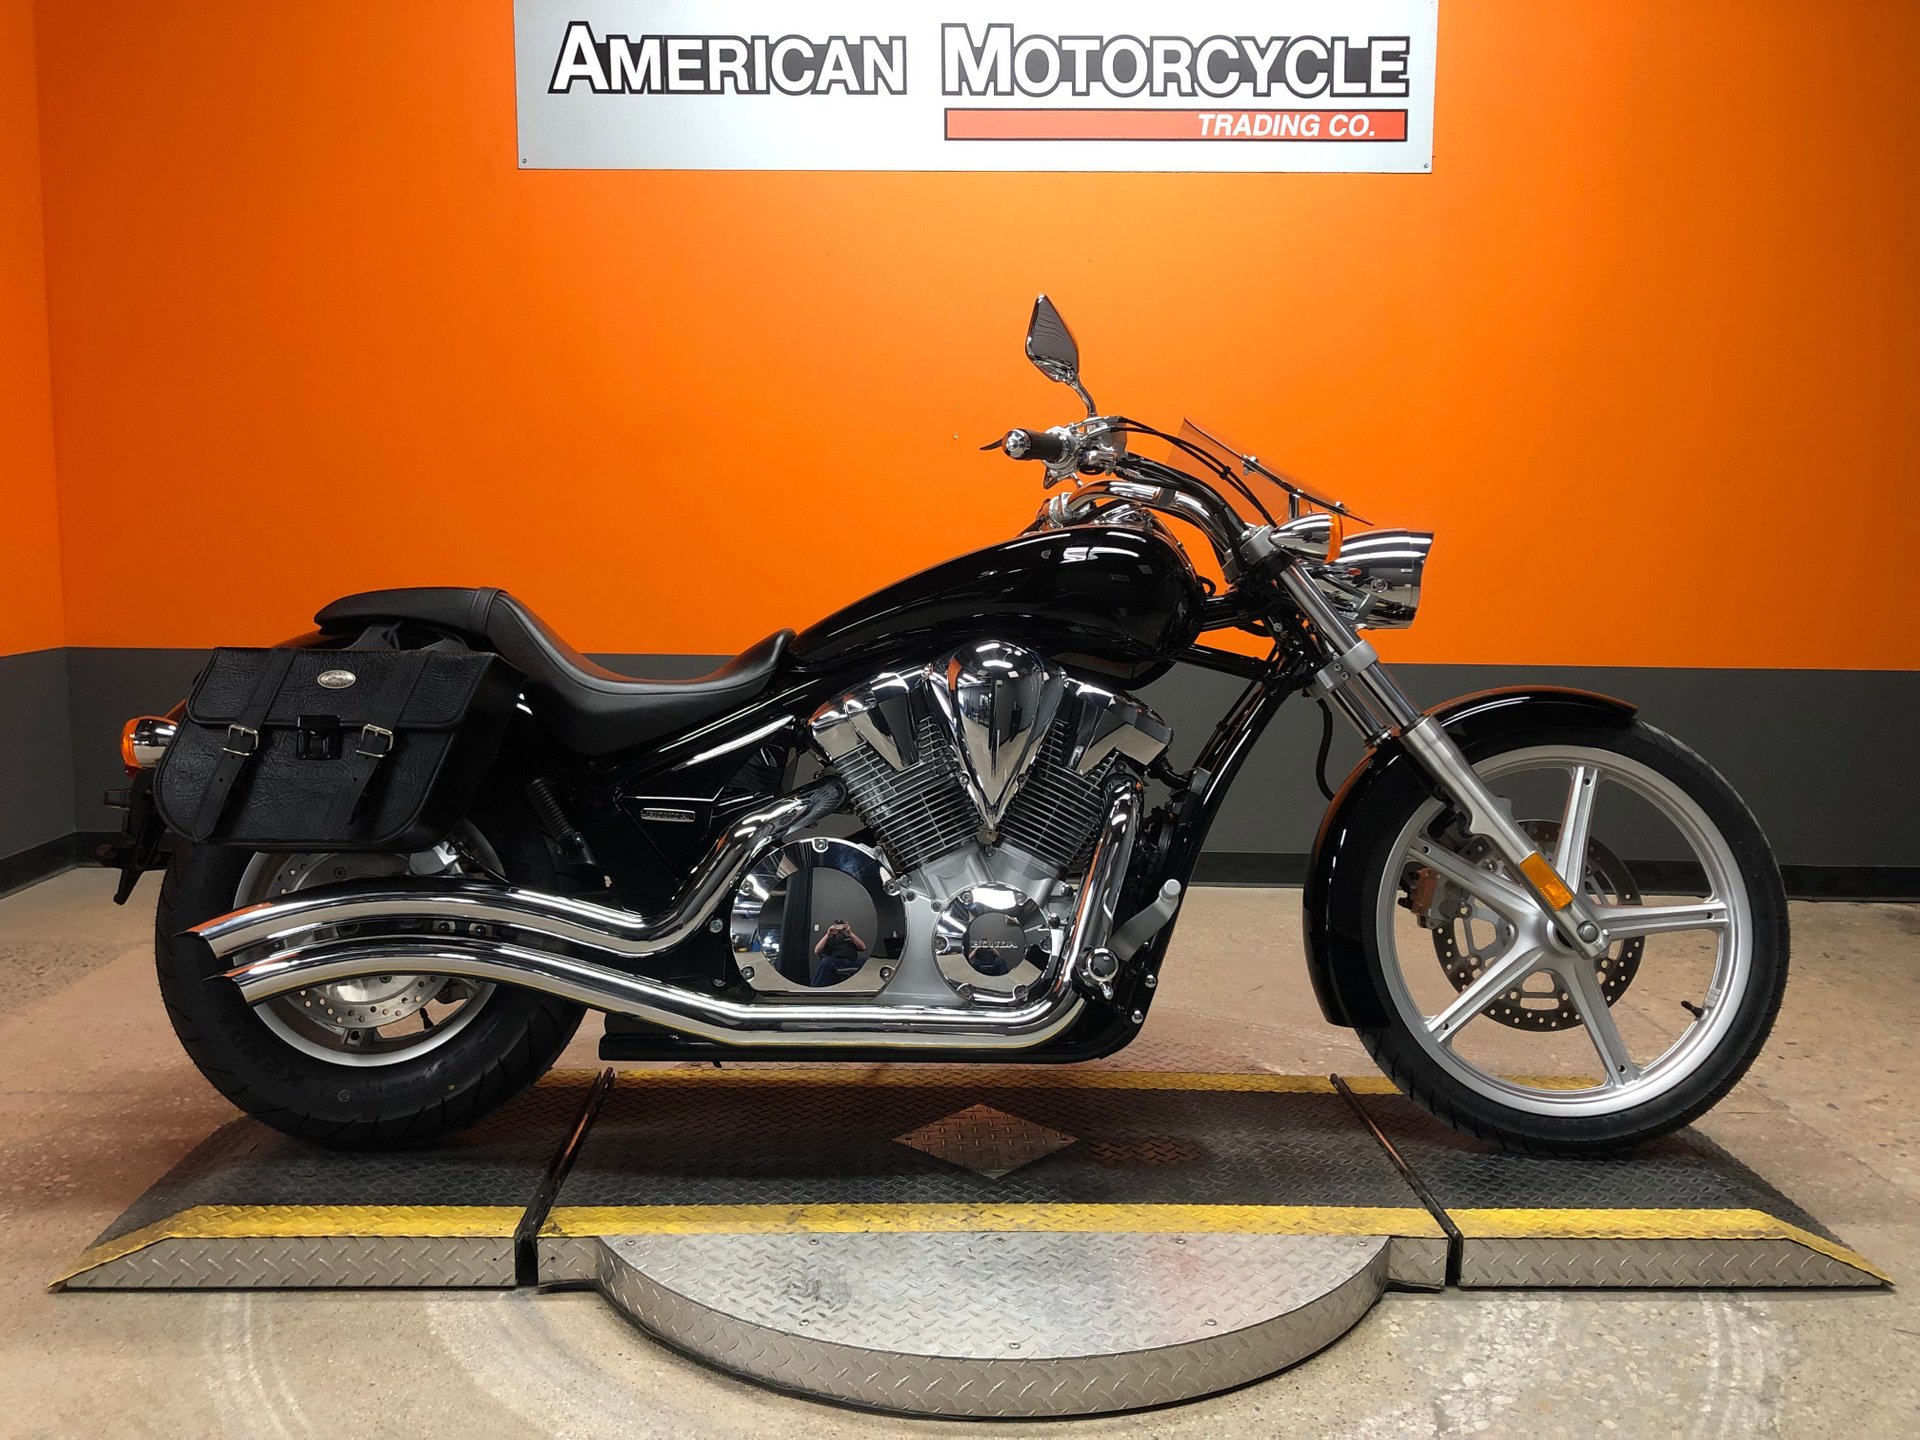 2010 Honda Sabre | American Motorcycle Trading Company - Used Harley ...